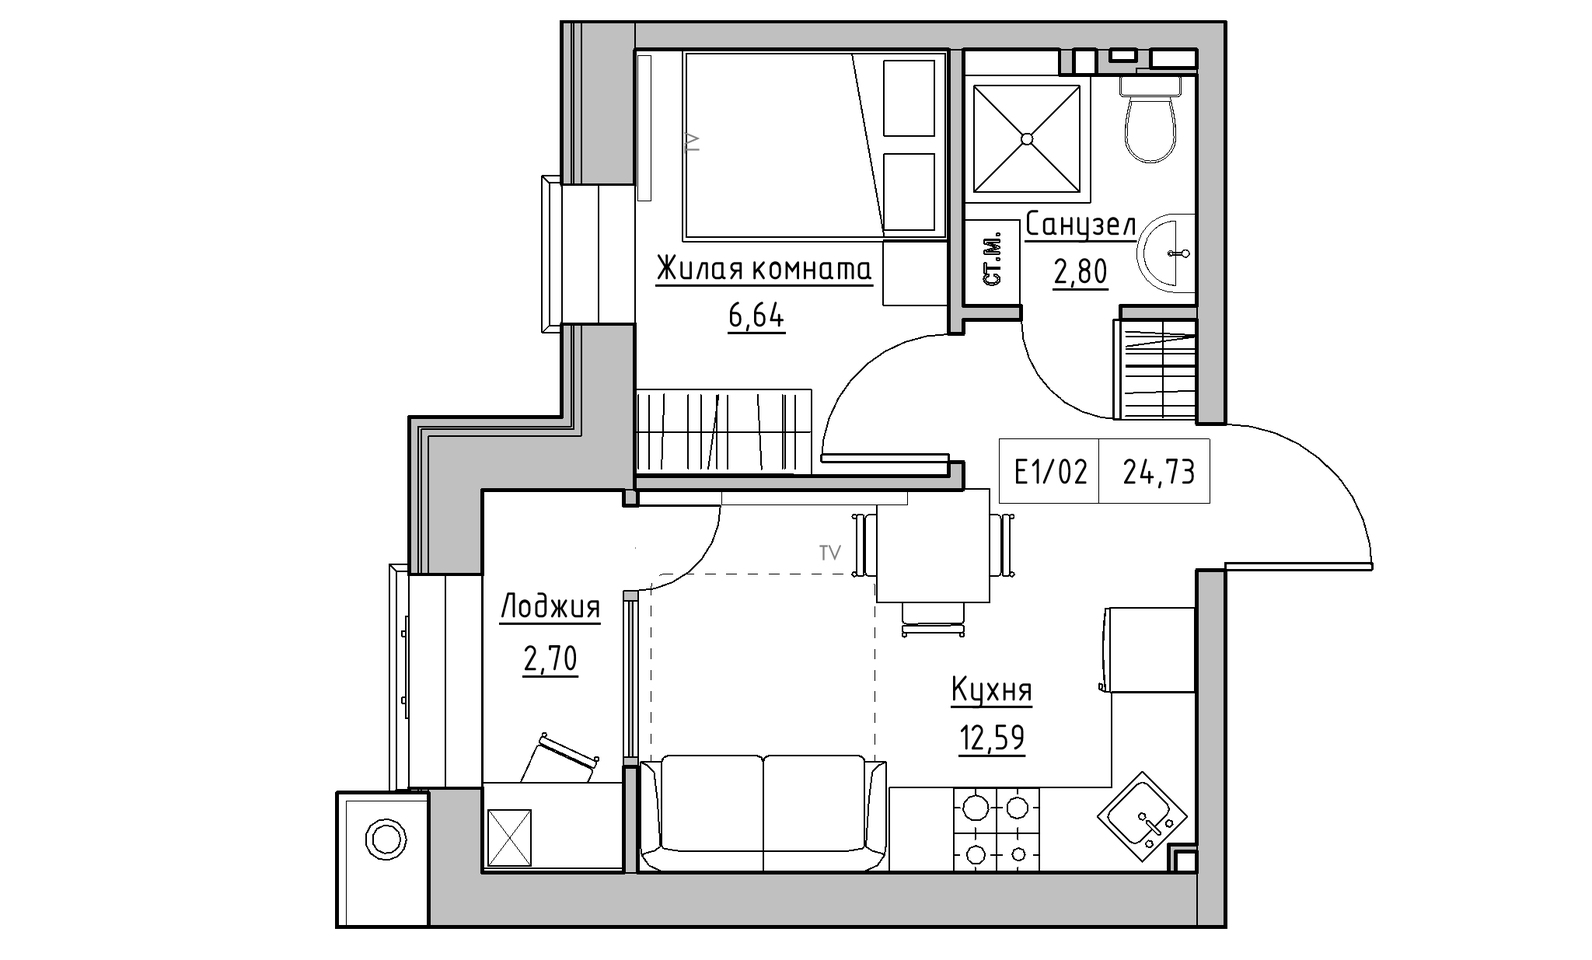 Планировка 1-к квартира площей 24.73м2, KS-014-01/0013.